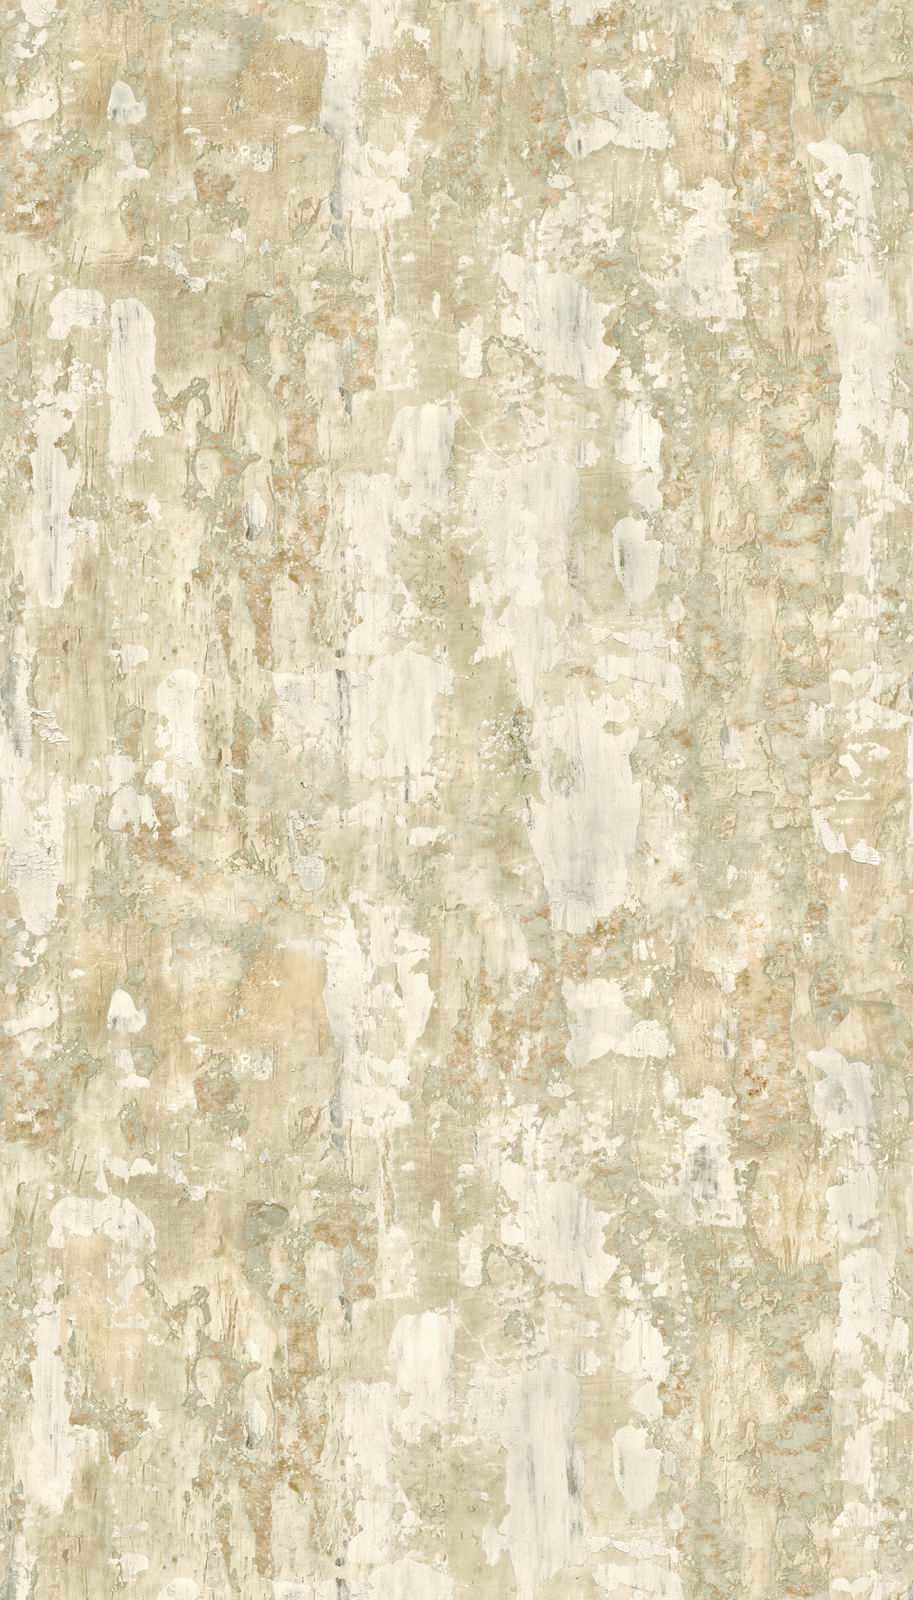             Papel pintado no tejido con aspecto de hormigón vintage - beige, gris
        